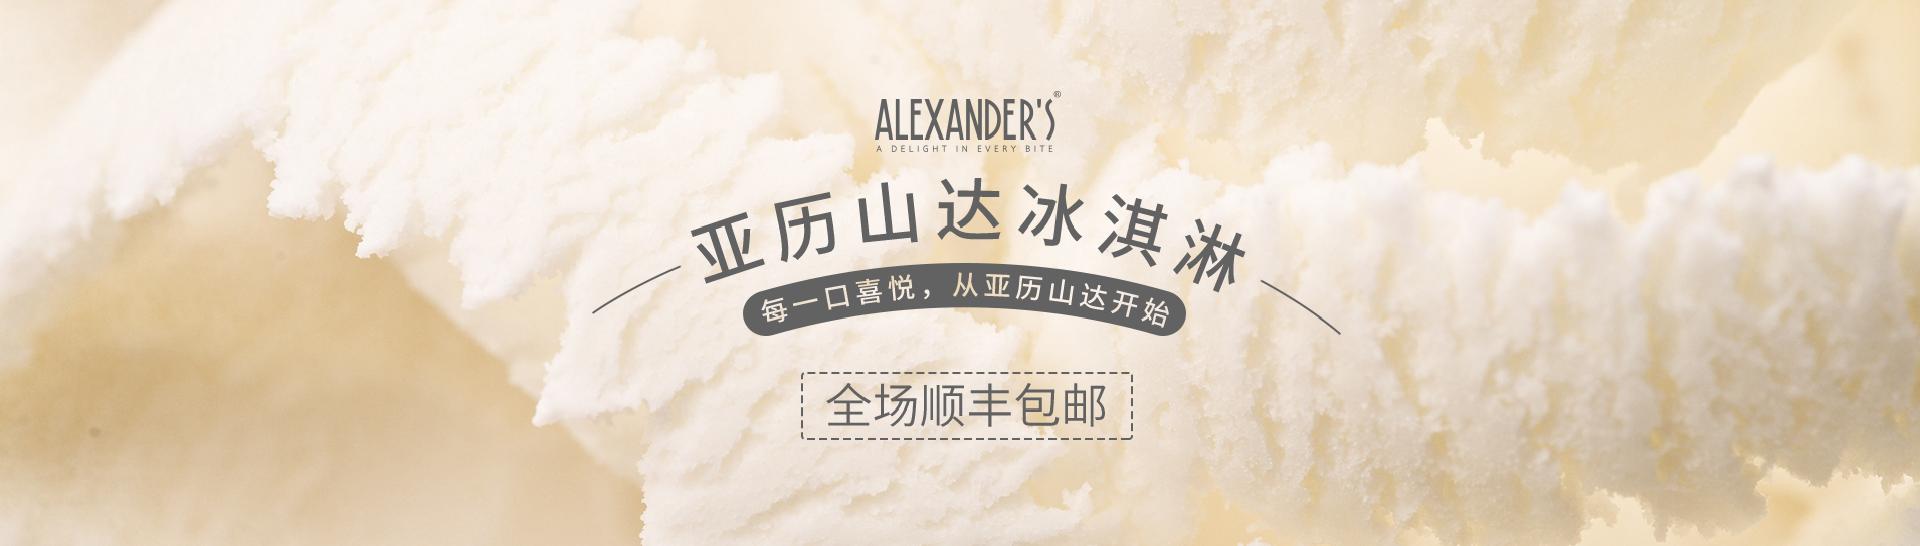 Alexander's 天猫商城首页